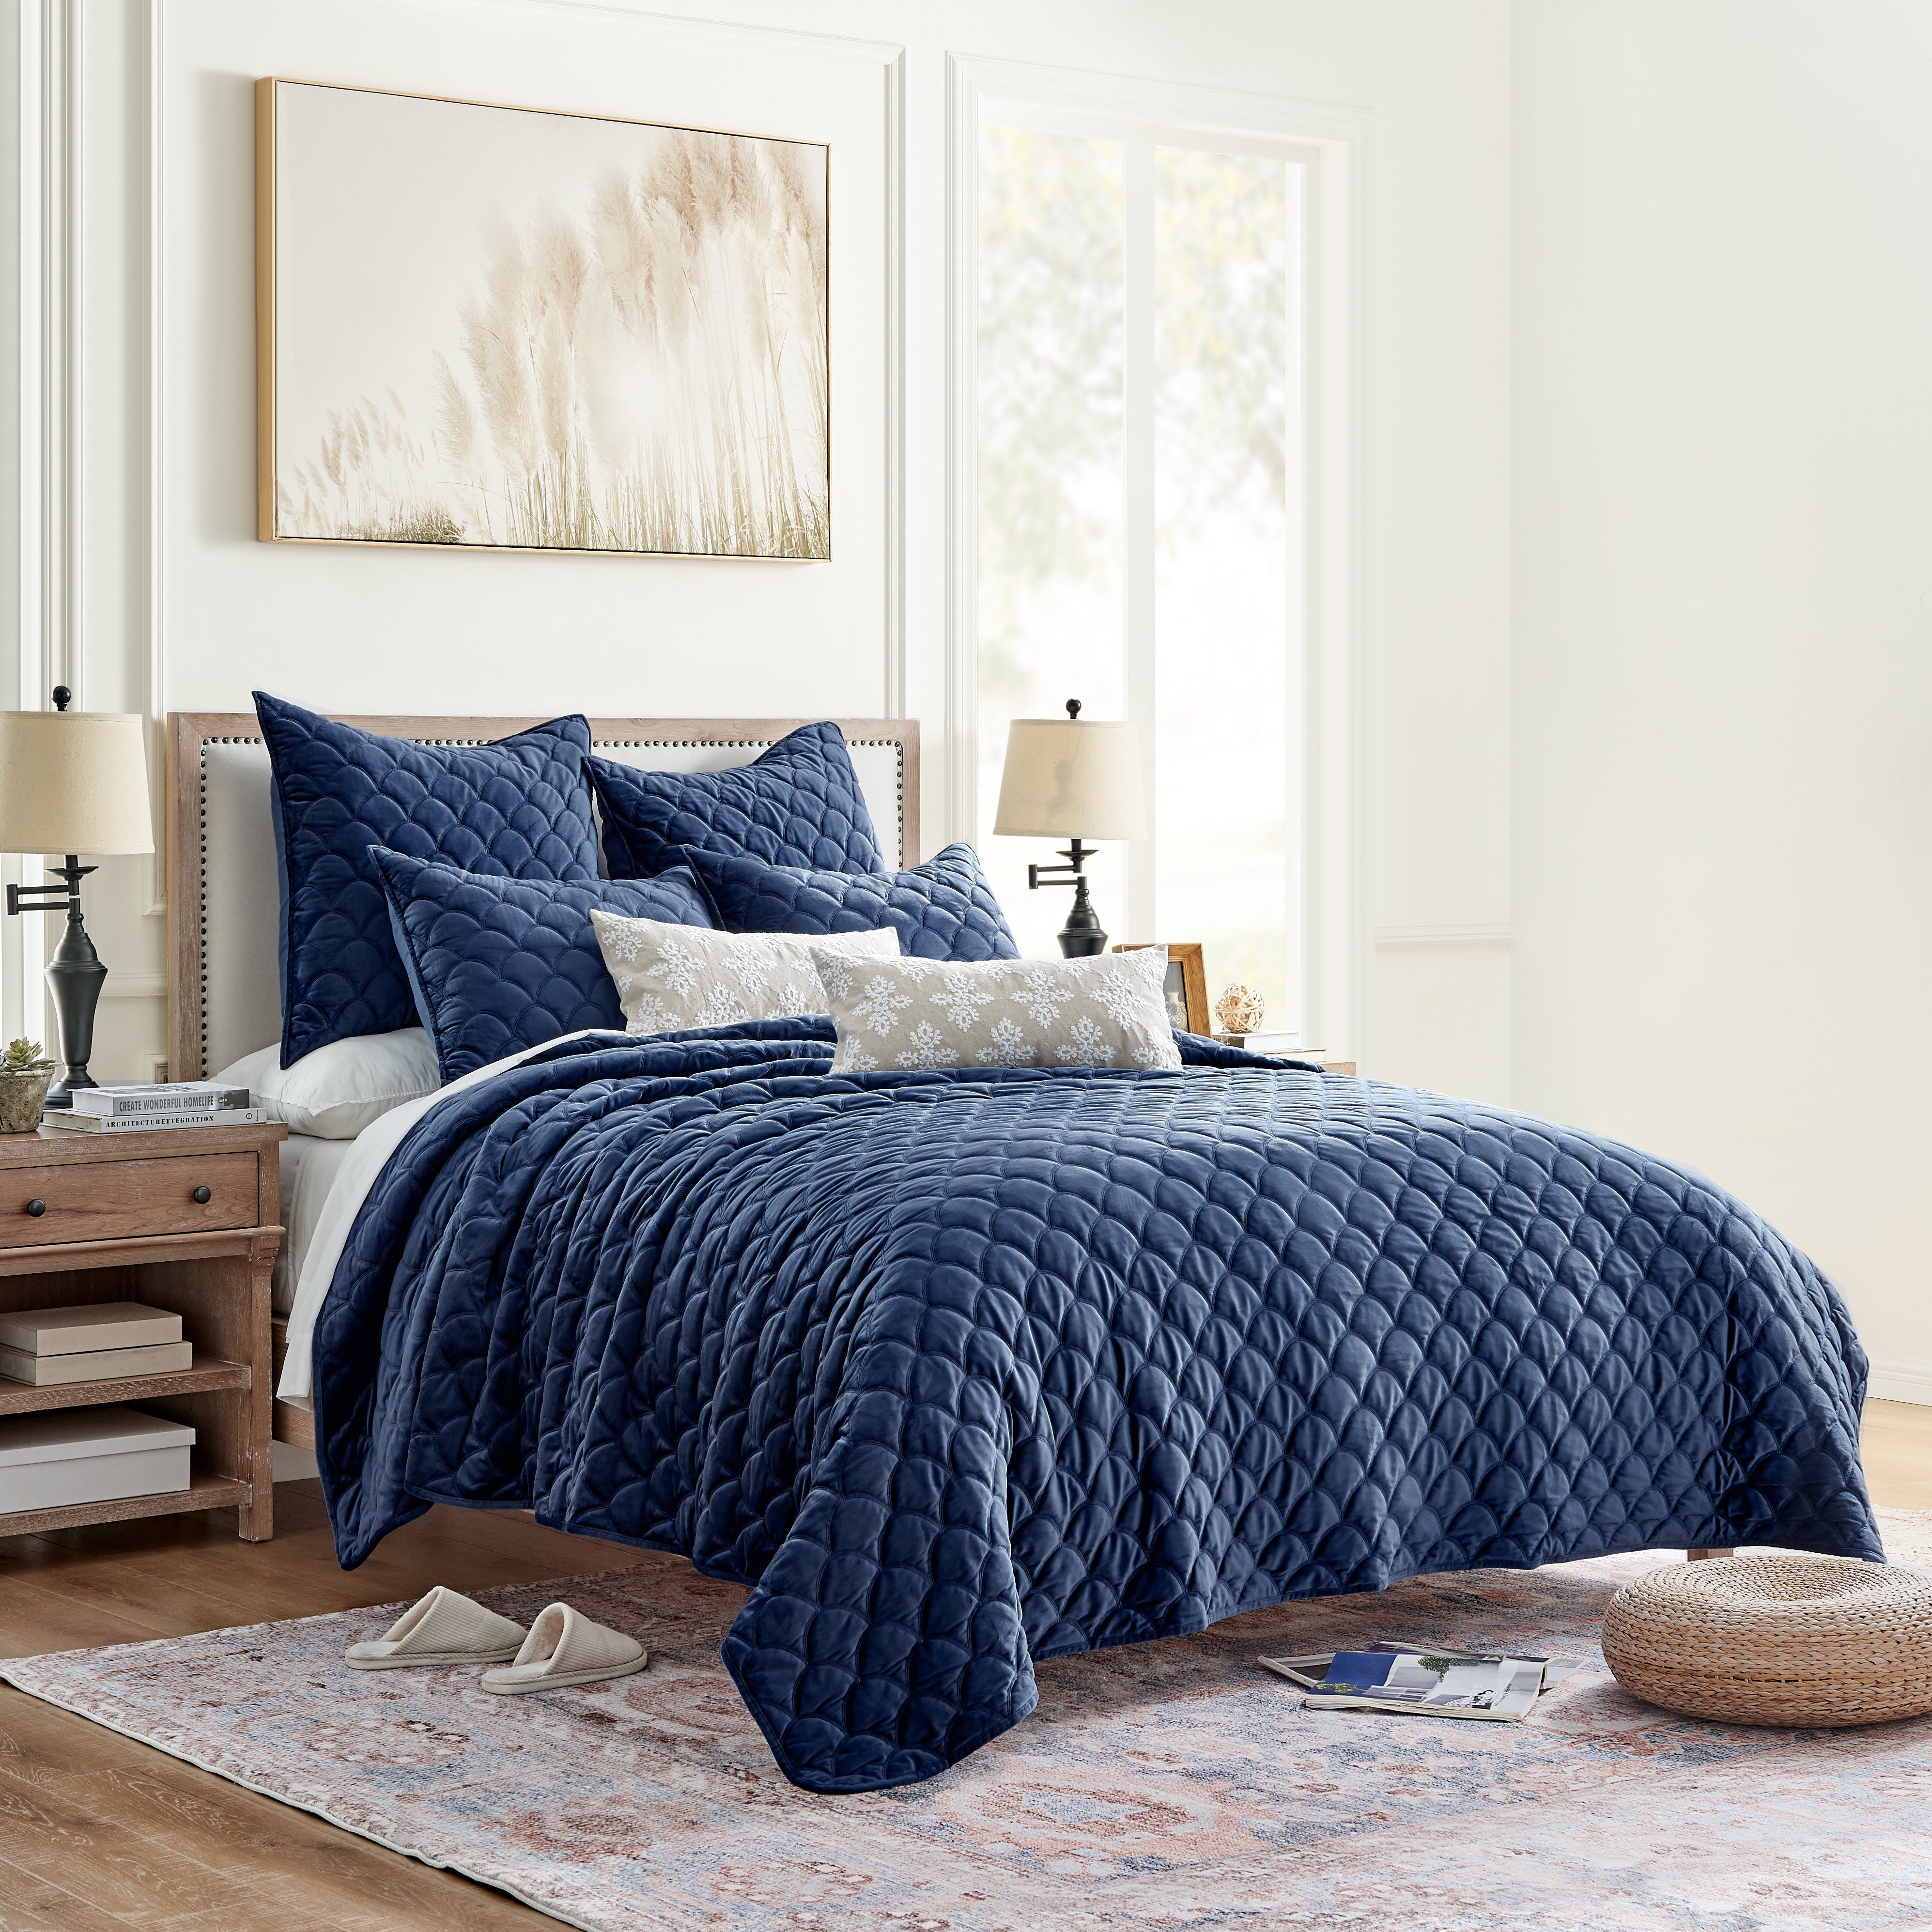 Navy Louis Vuitton Bedding Sets Bed Sets, Bedroom Sets, Comforter Sets, Duvet  Cover, Bedspread